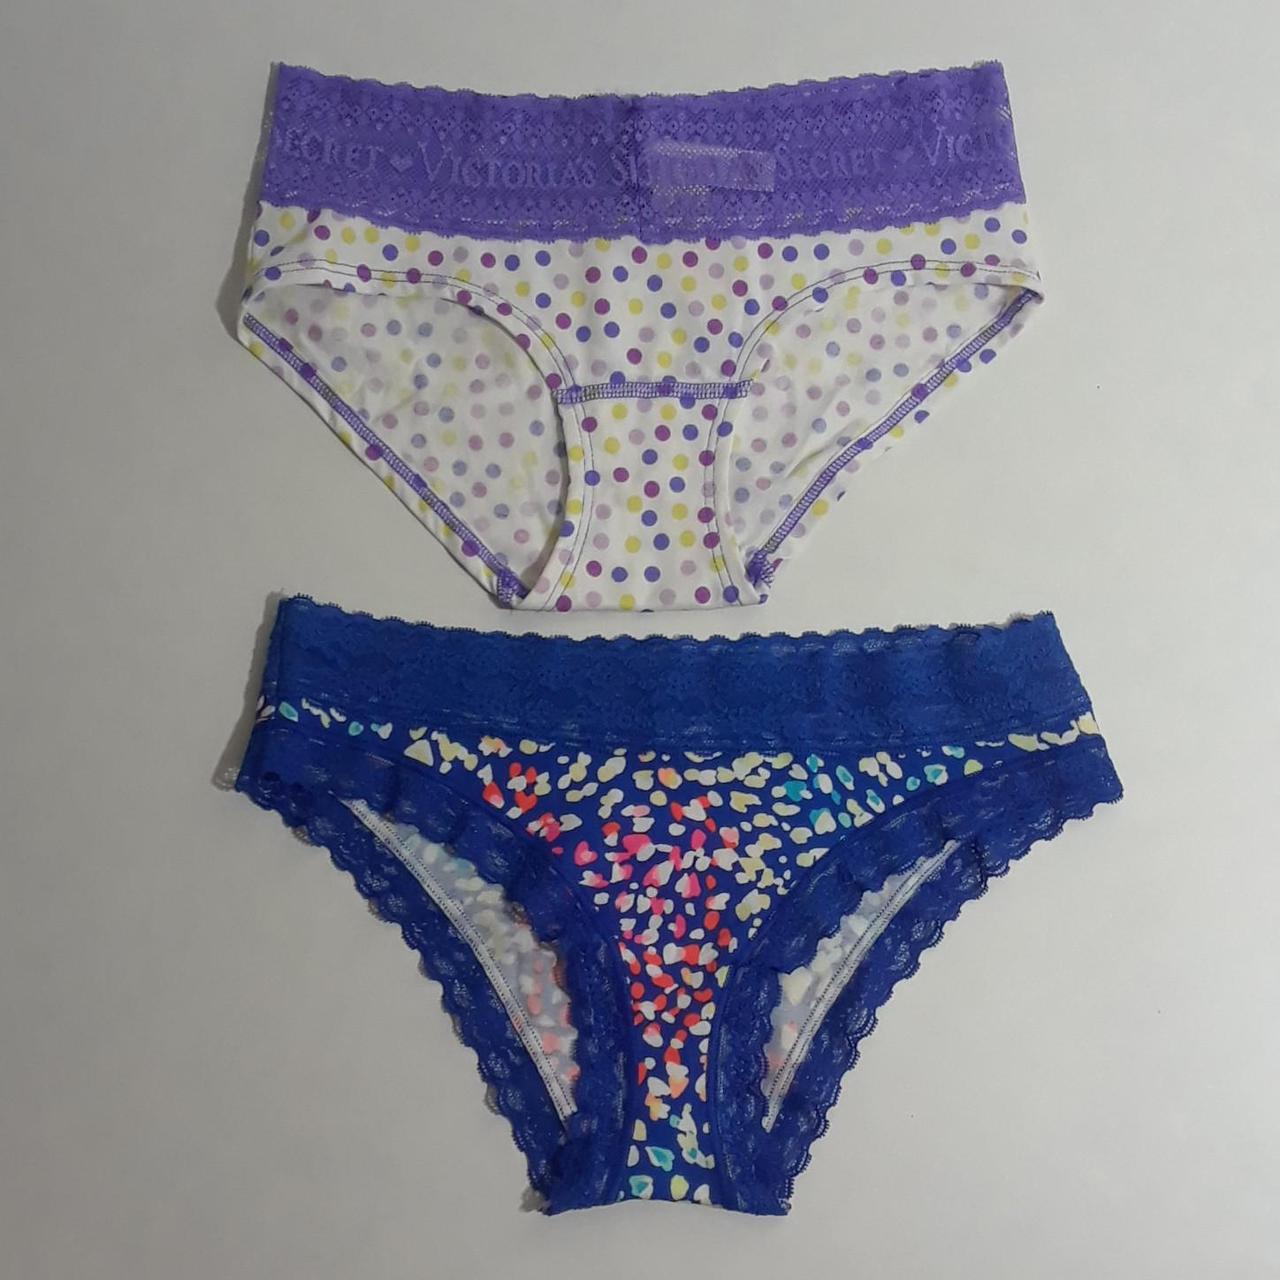 Victoria secret-underwear-set - Depop